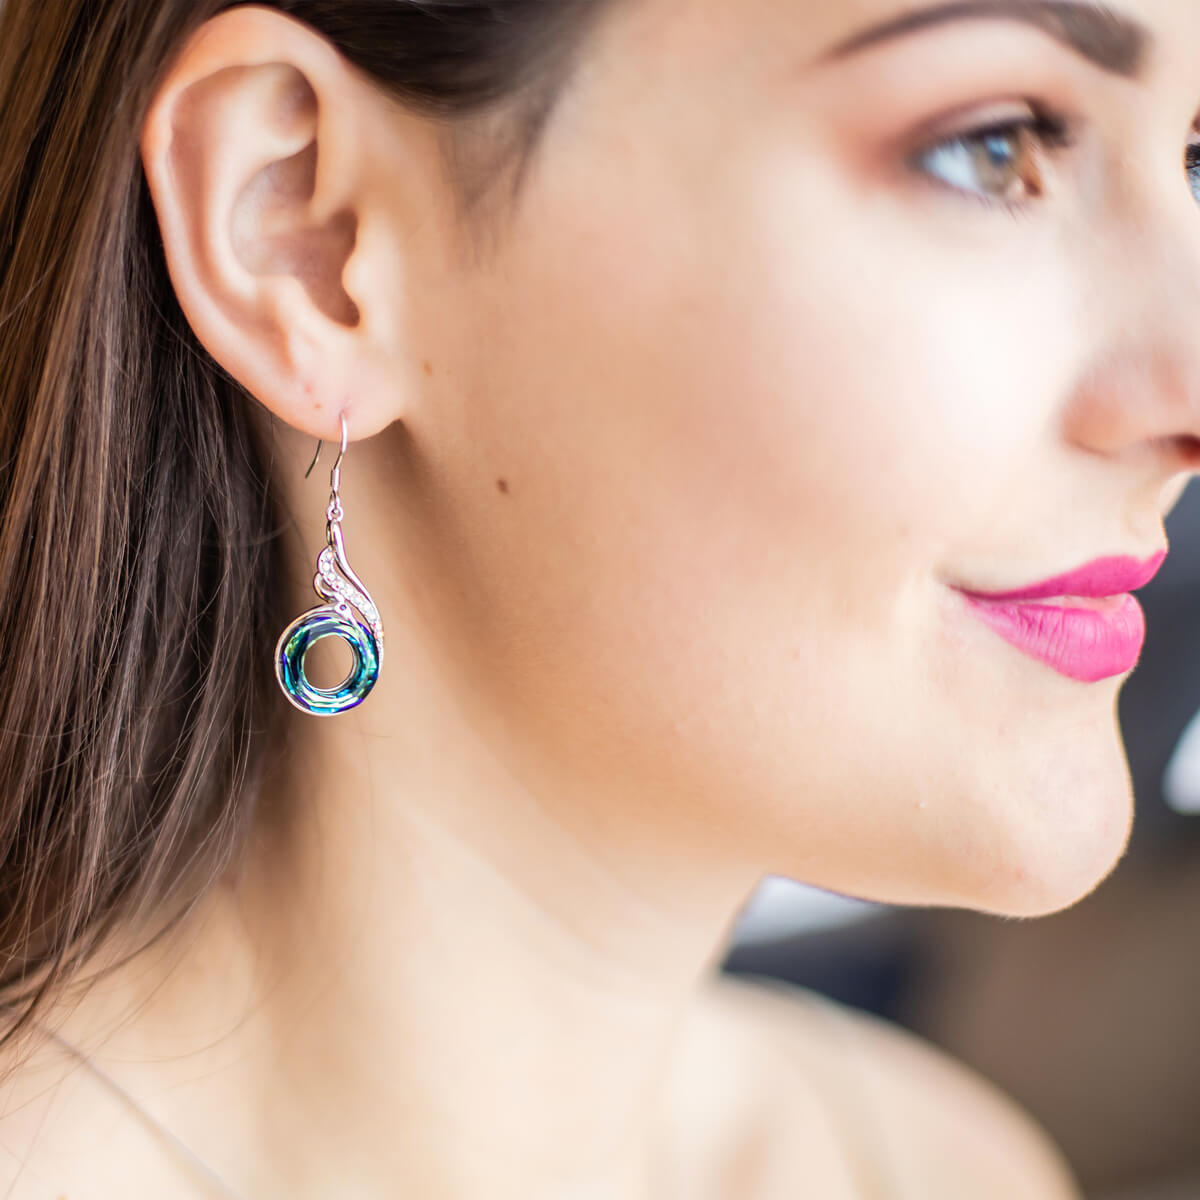 Rise of the Phoenix Blue Earrings